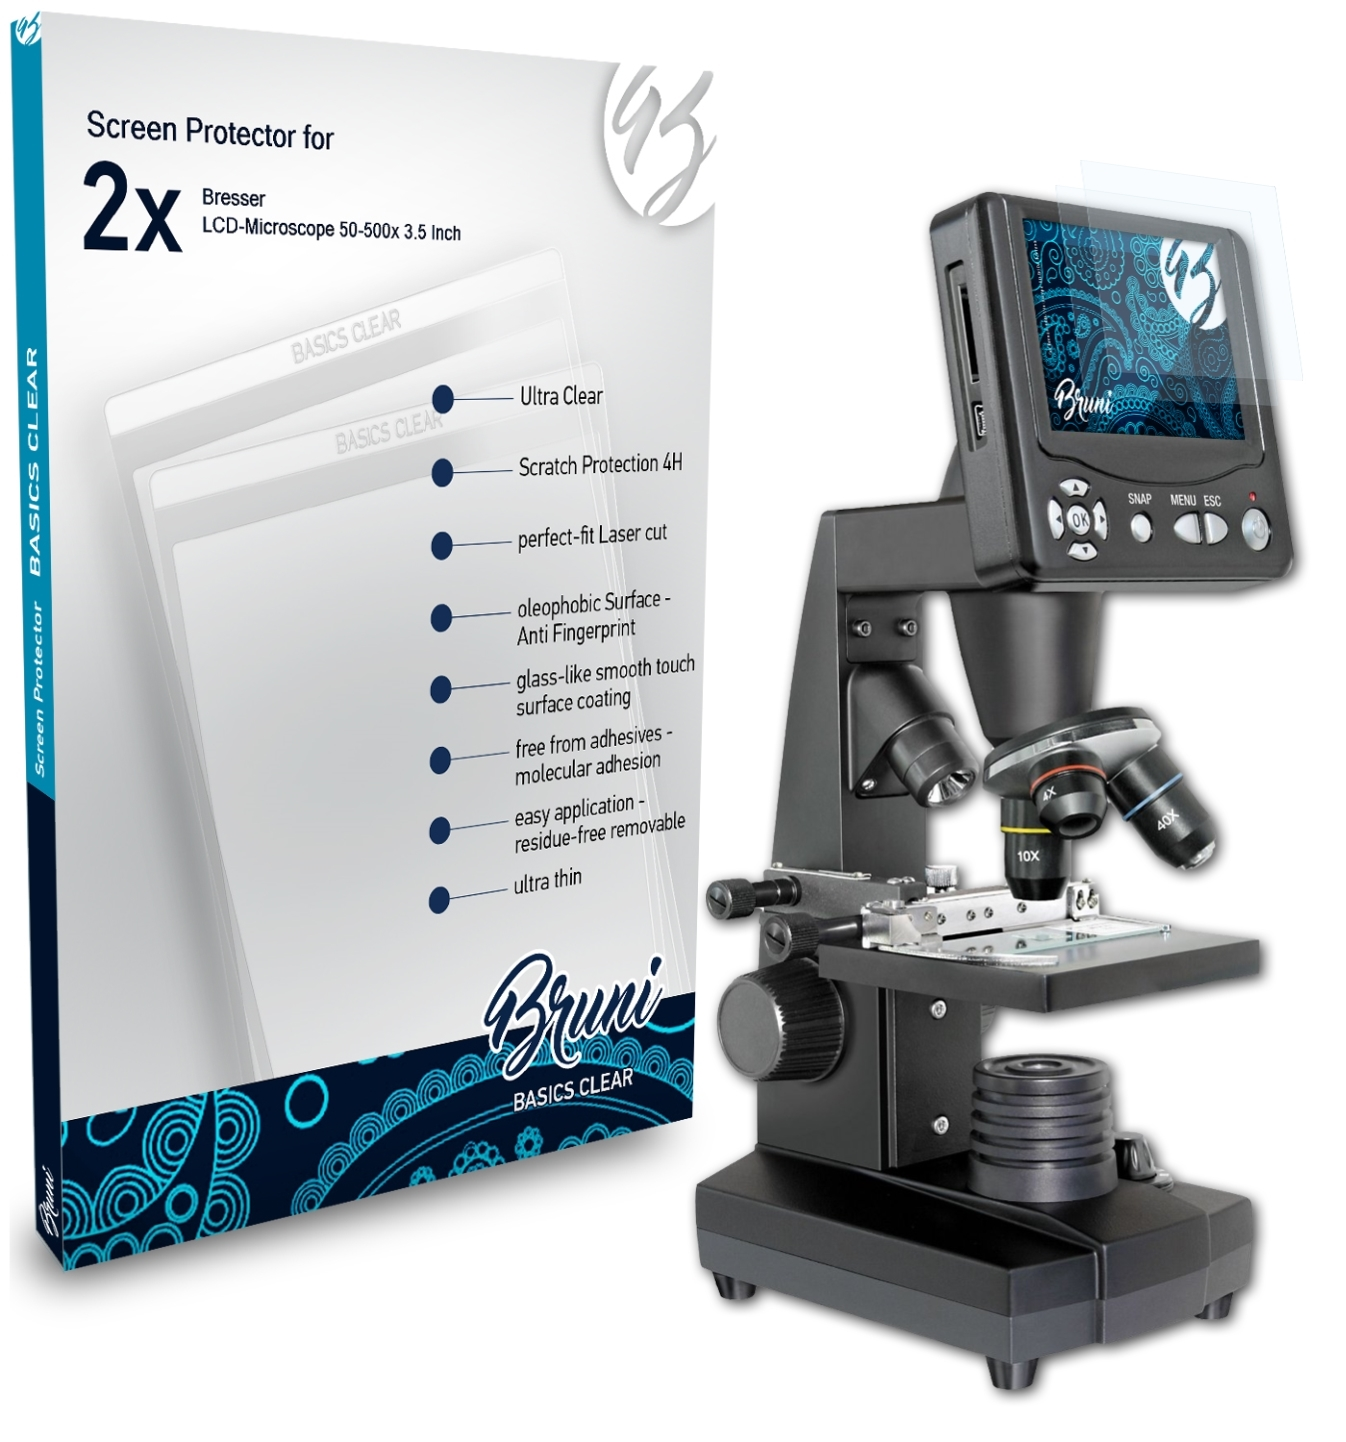 2x (3.5 50-500x Basics-Clear Inch)) Bresser BRUNI Schutzfolie(für LCD-Microscope